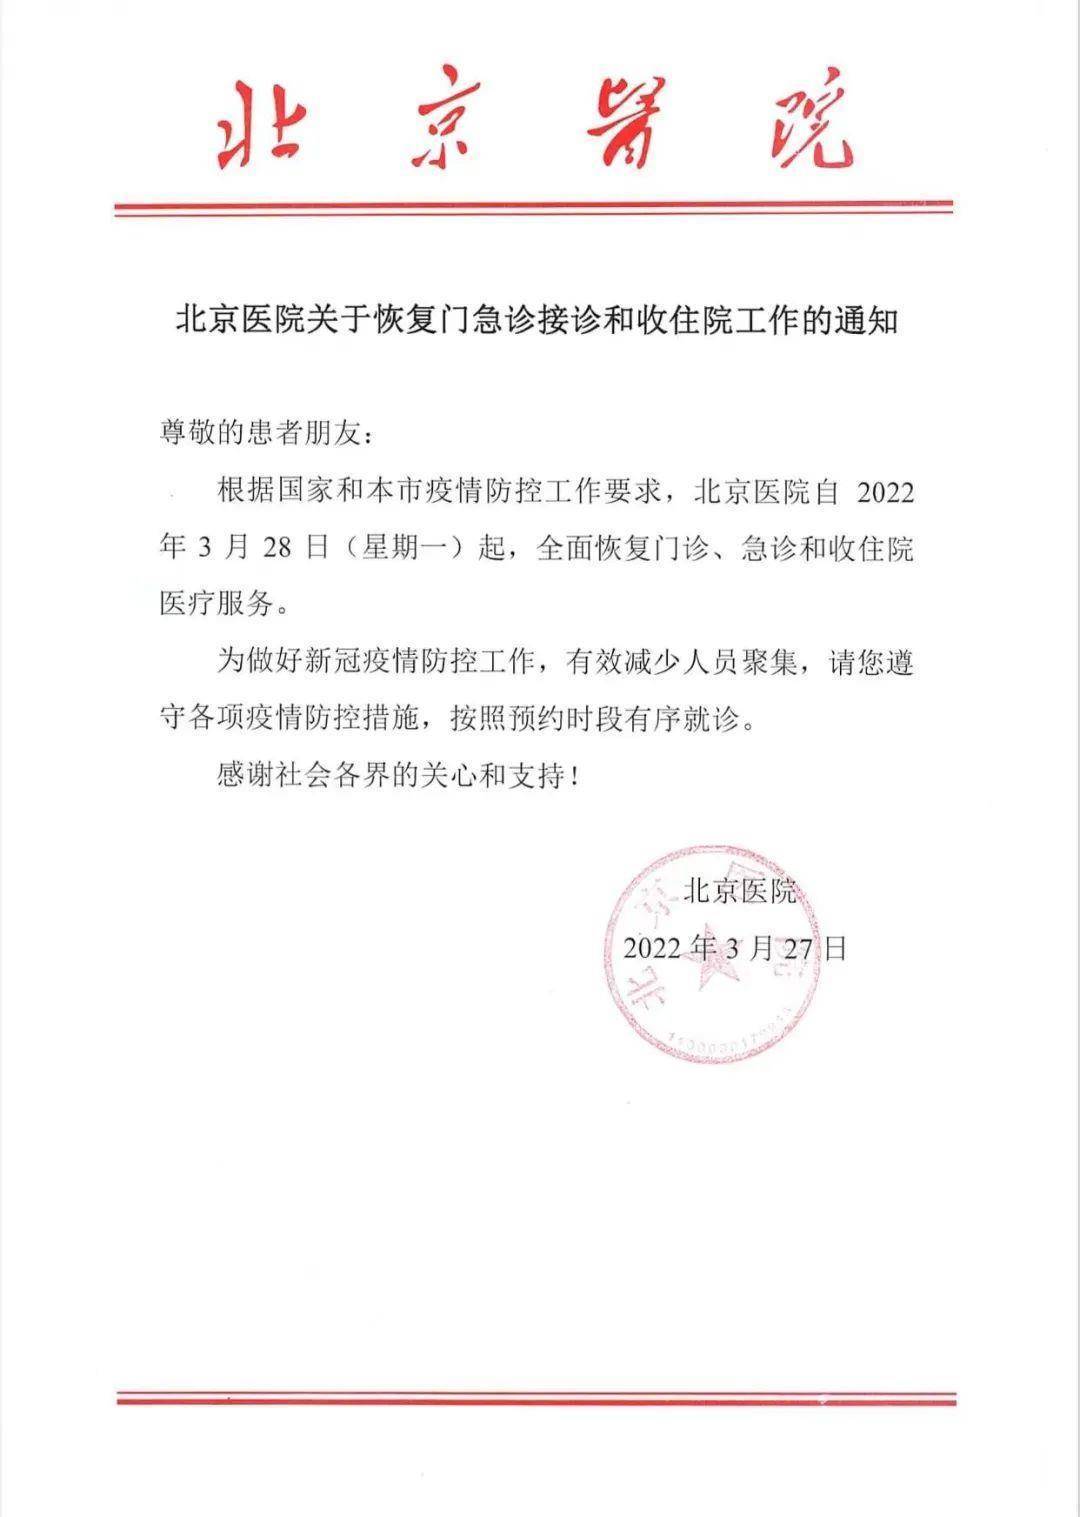 服务|北京医院28日起全面恢复门急诊接诊和收住院工作